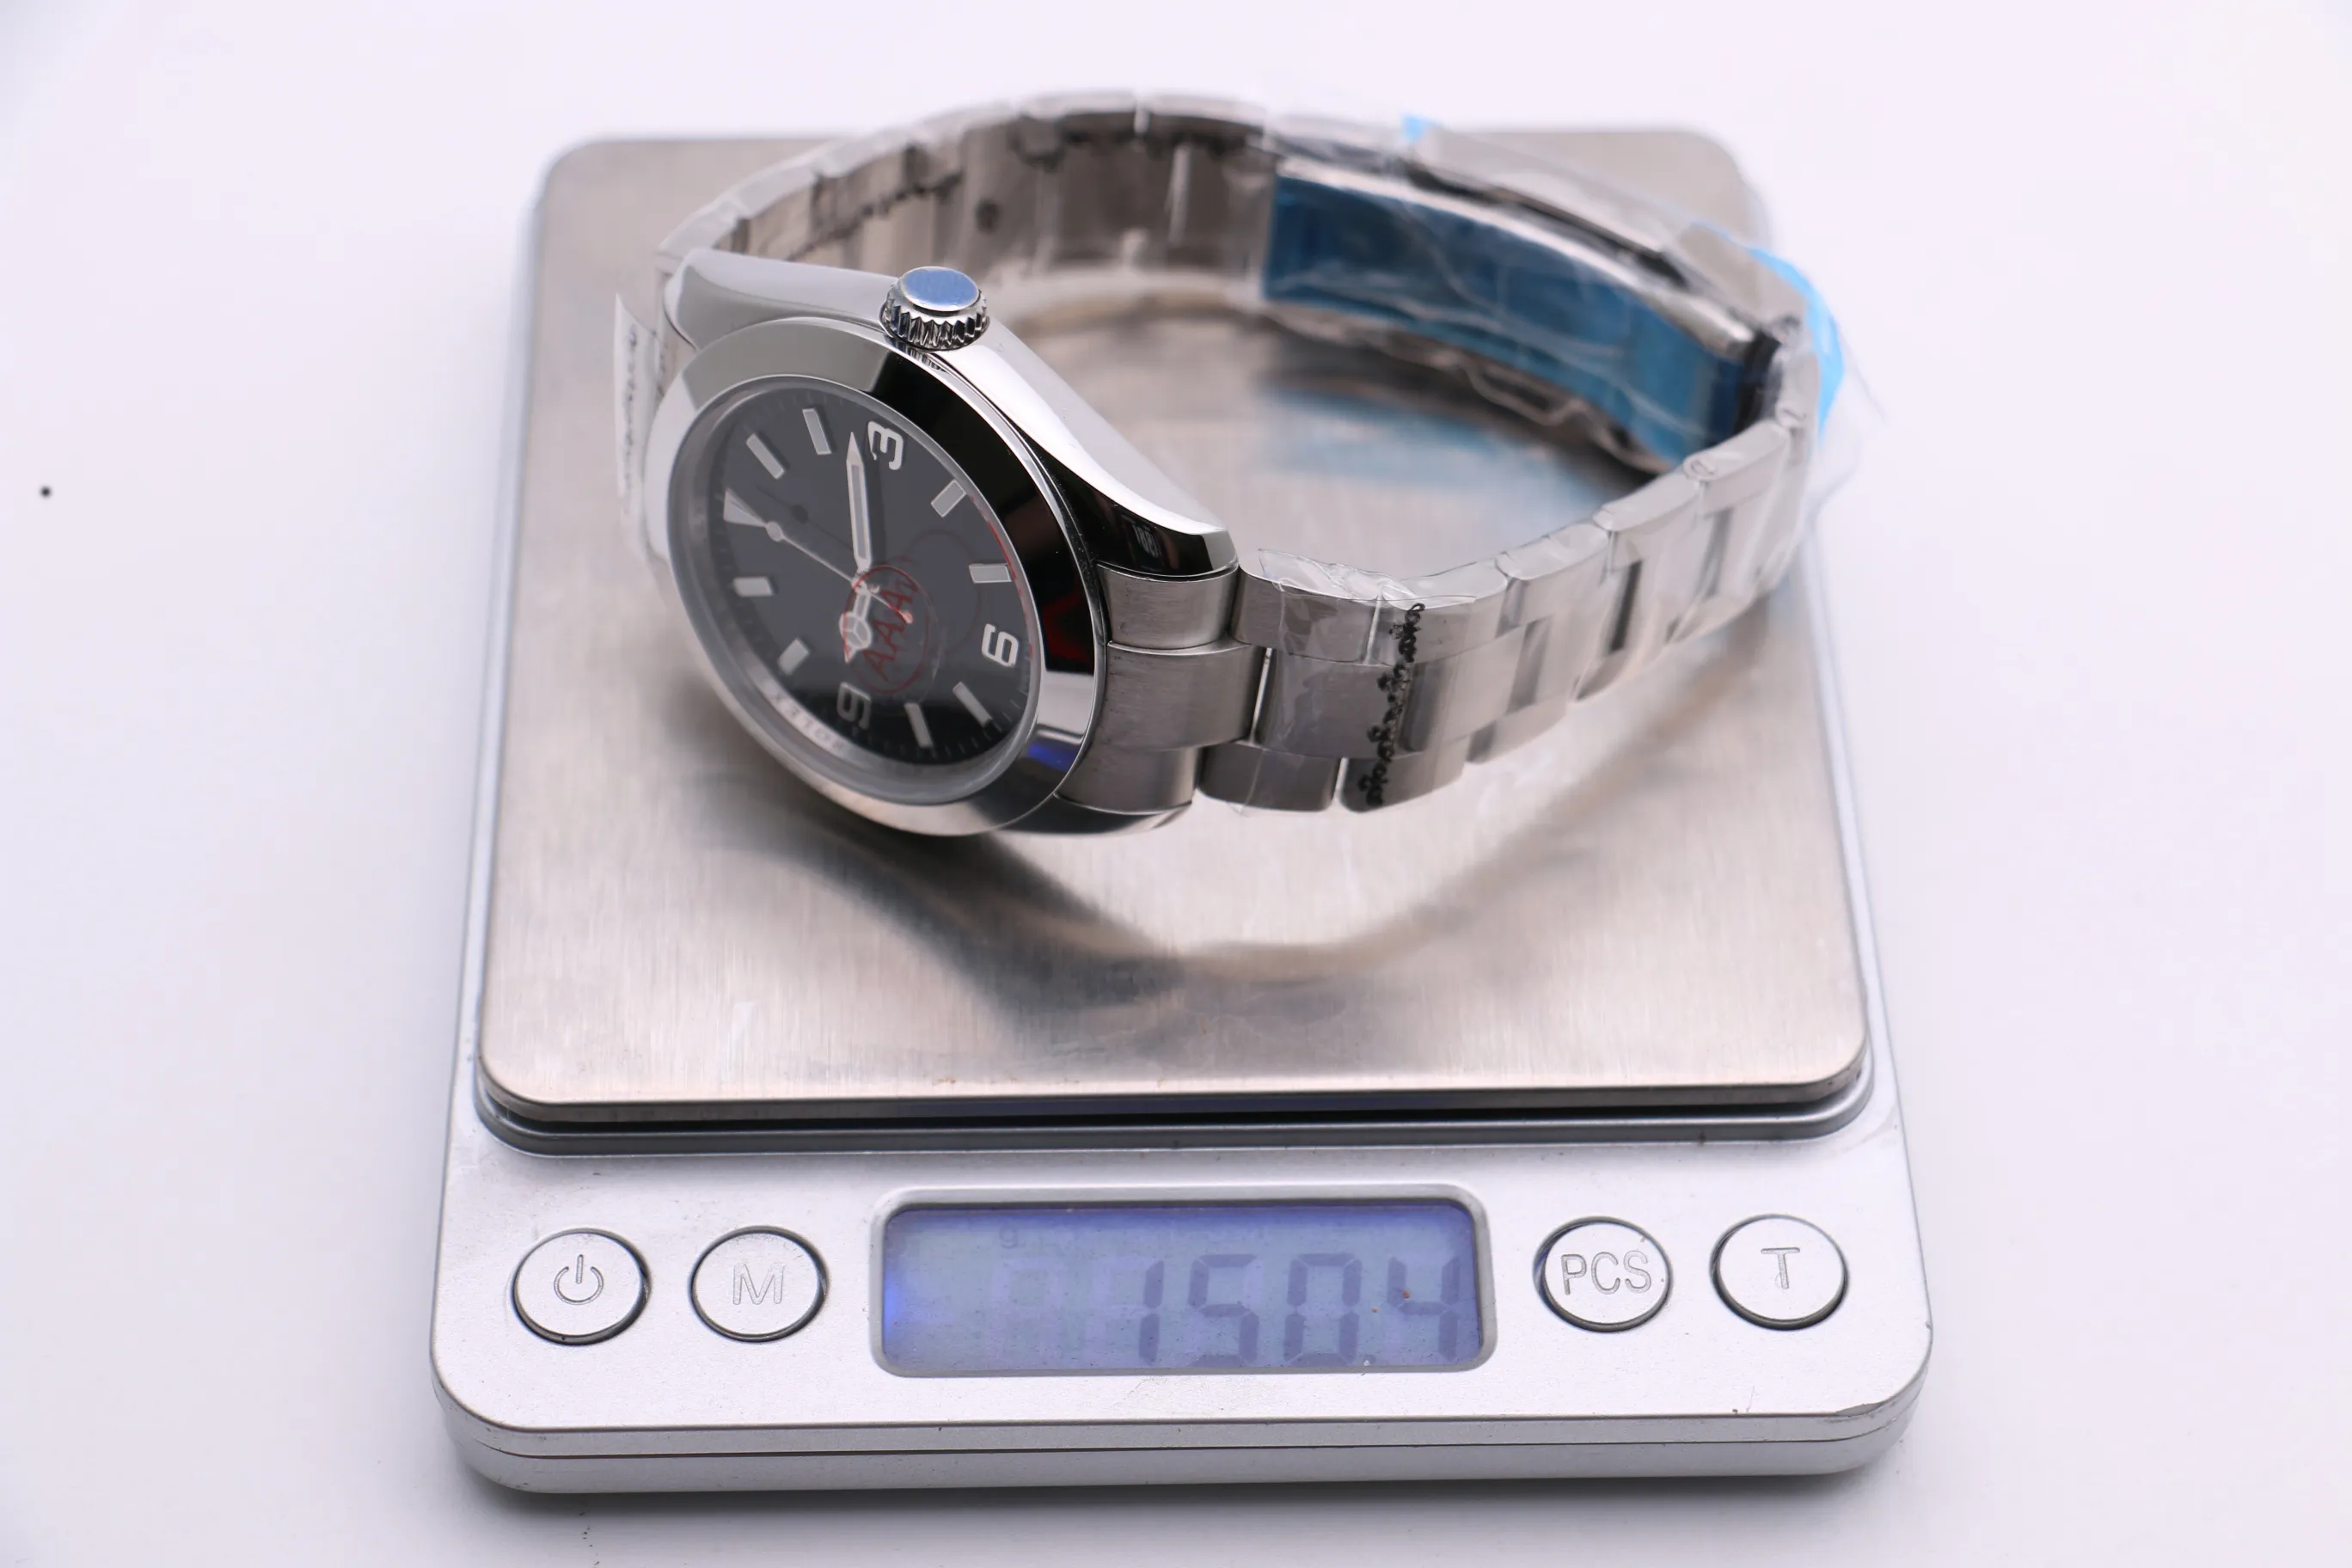 Zegarek mechaniczny mężczyzn 116400 Srebrny biały biały stal ze stali nierdzewnej Pasku składane Trzy-pinowe nowoczesne sportowe fashio251b